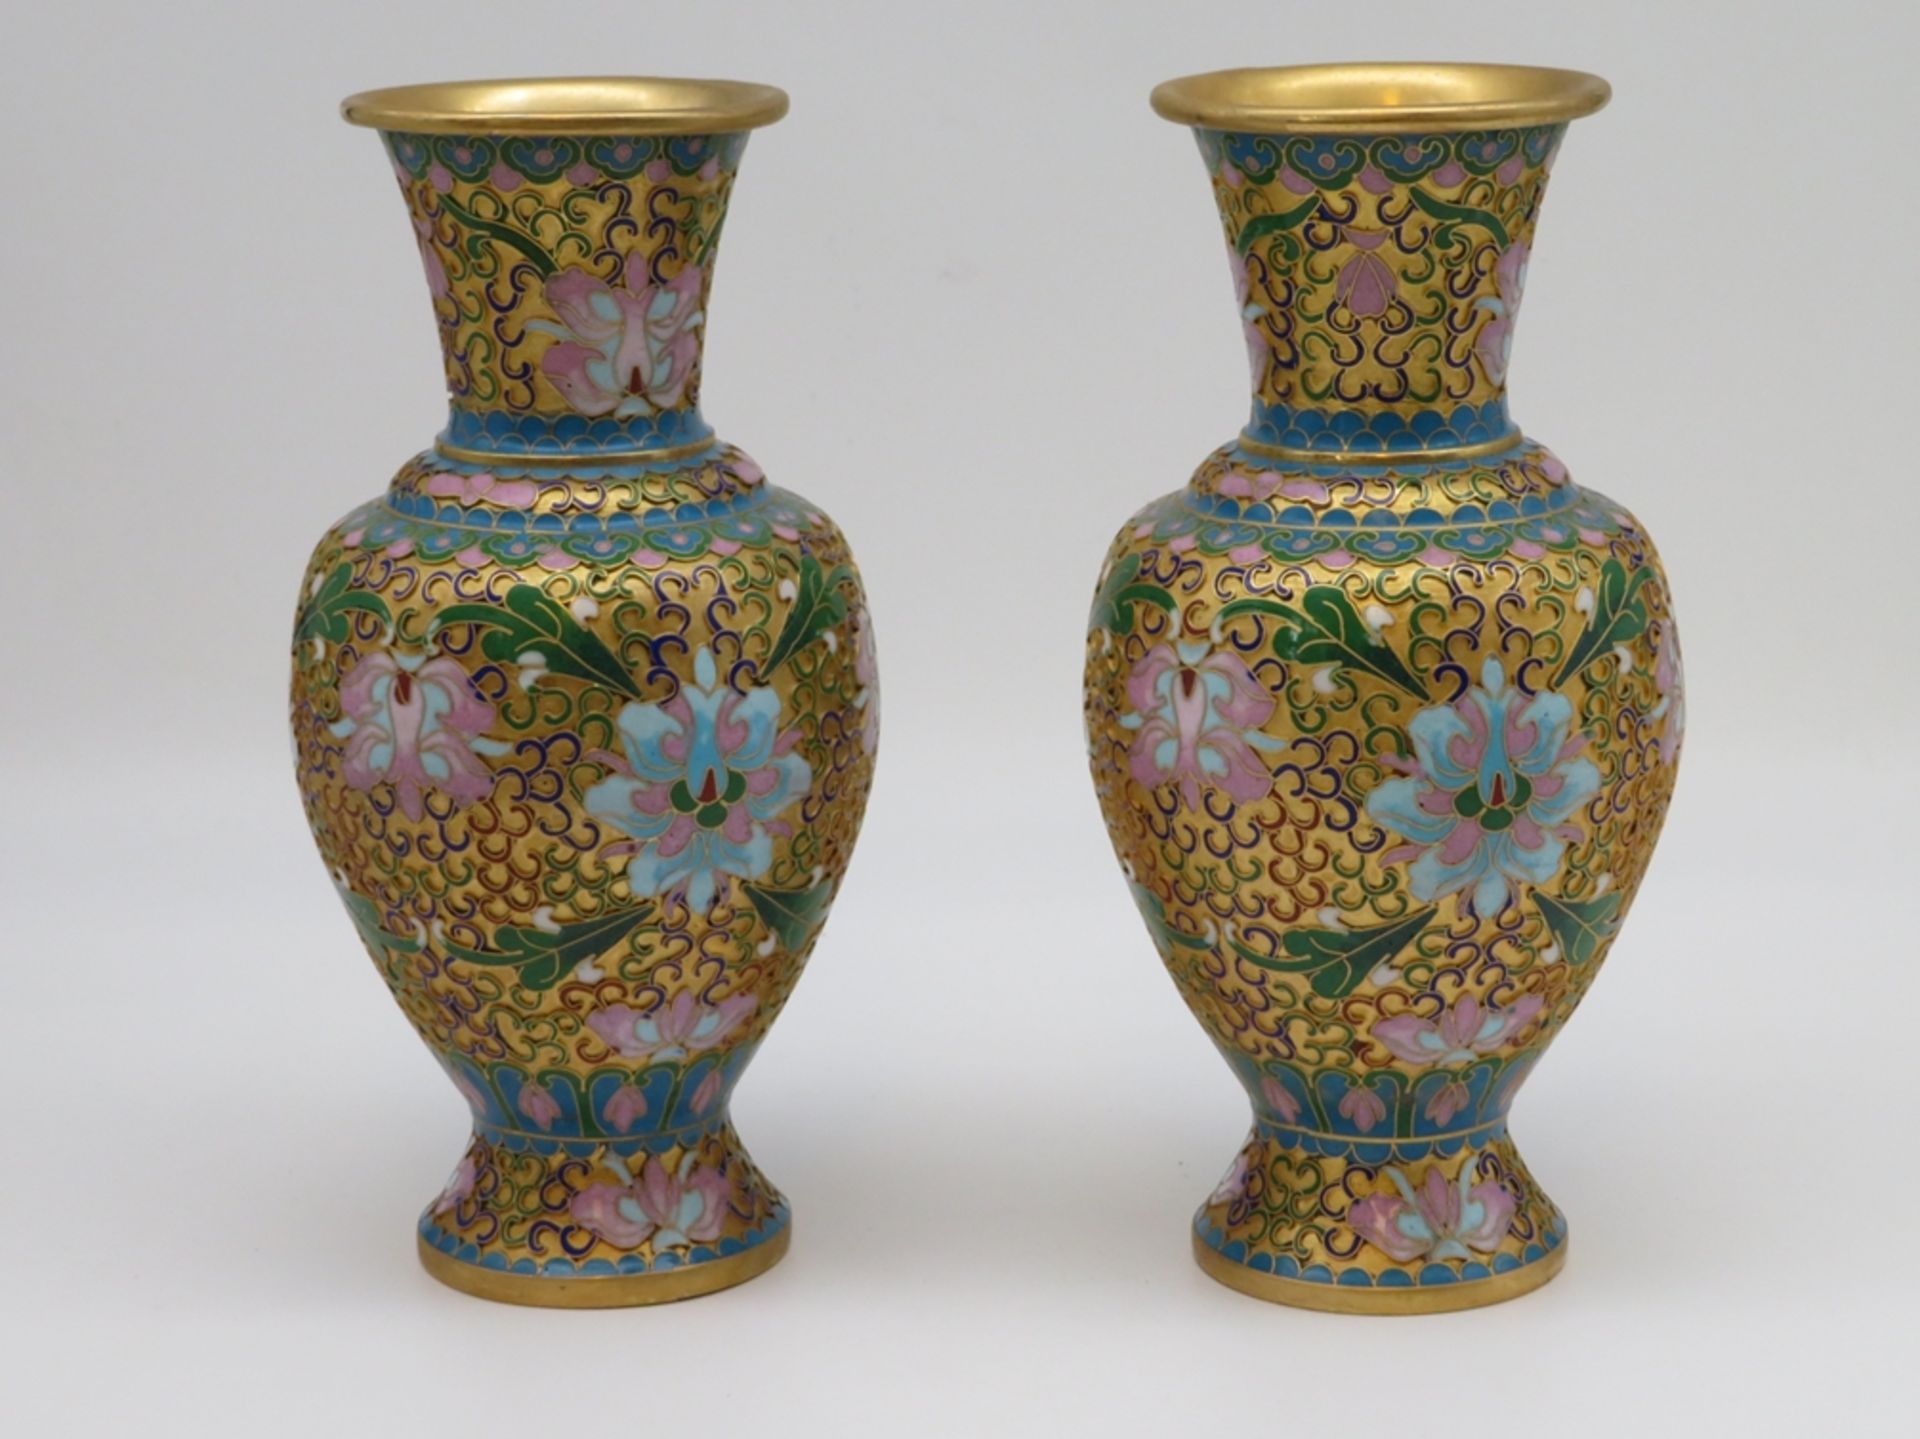 Paar Cloisonné Vasen, China, farbiger Zellenschmelz, h 25 cm, d 12 cm.